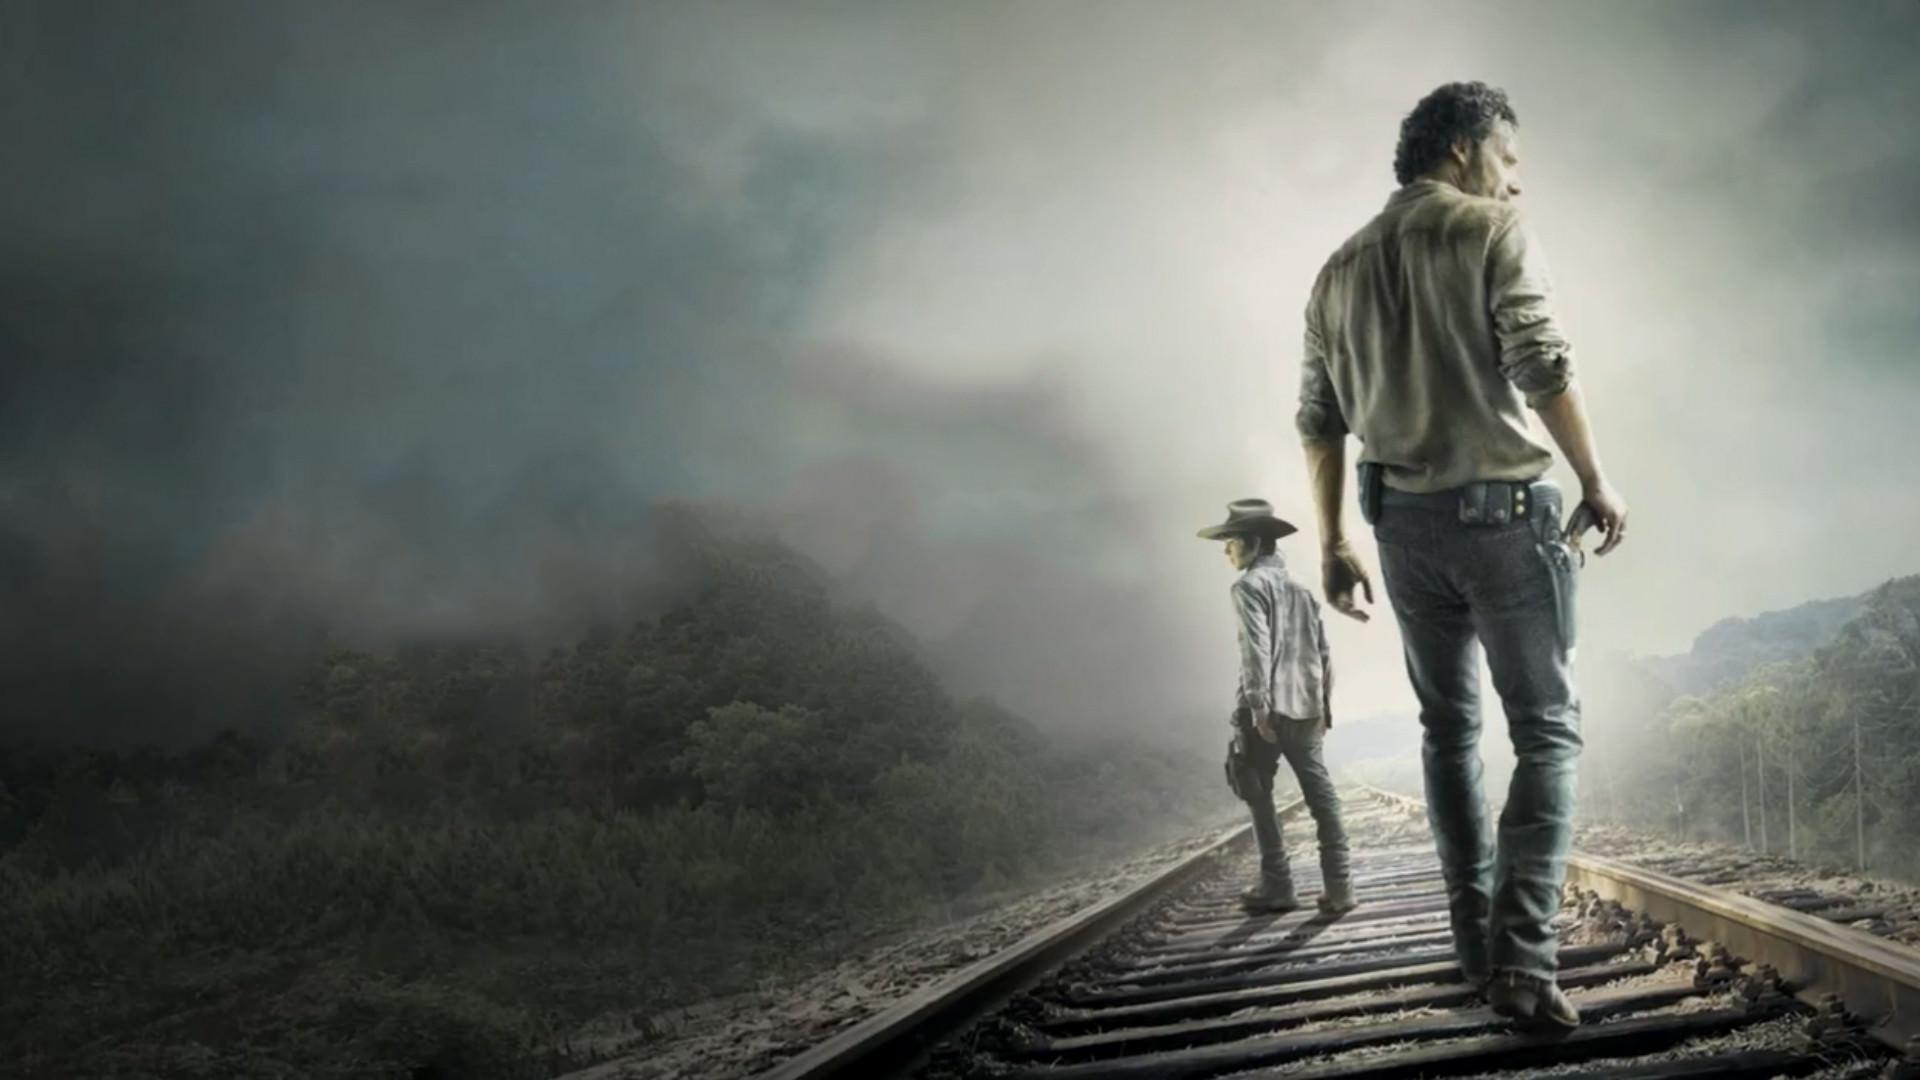 Movie The Walking Dead Wallpaper. iCon Wallpaper HD